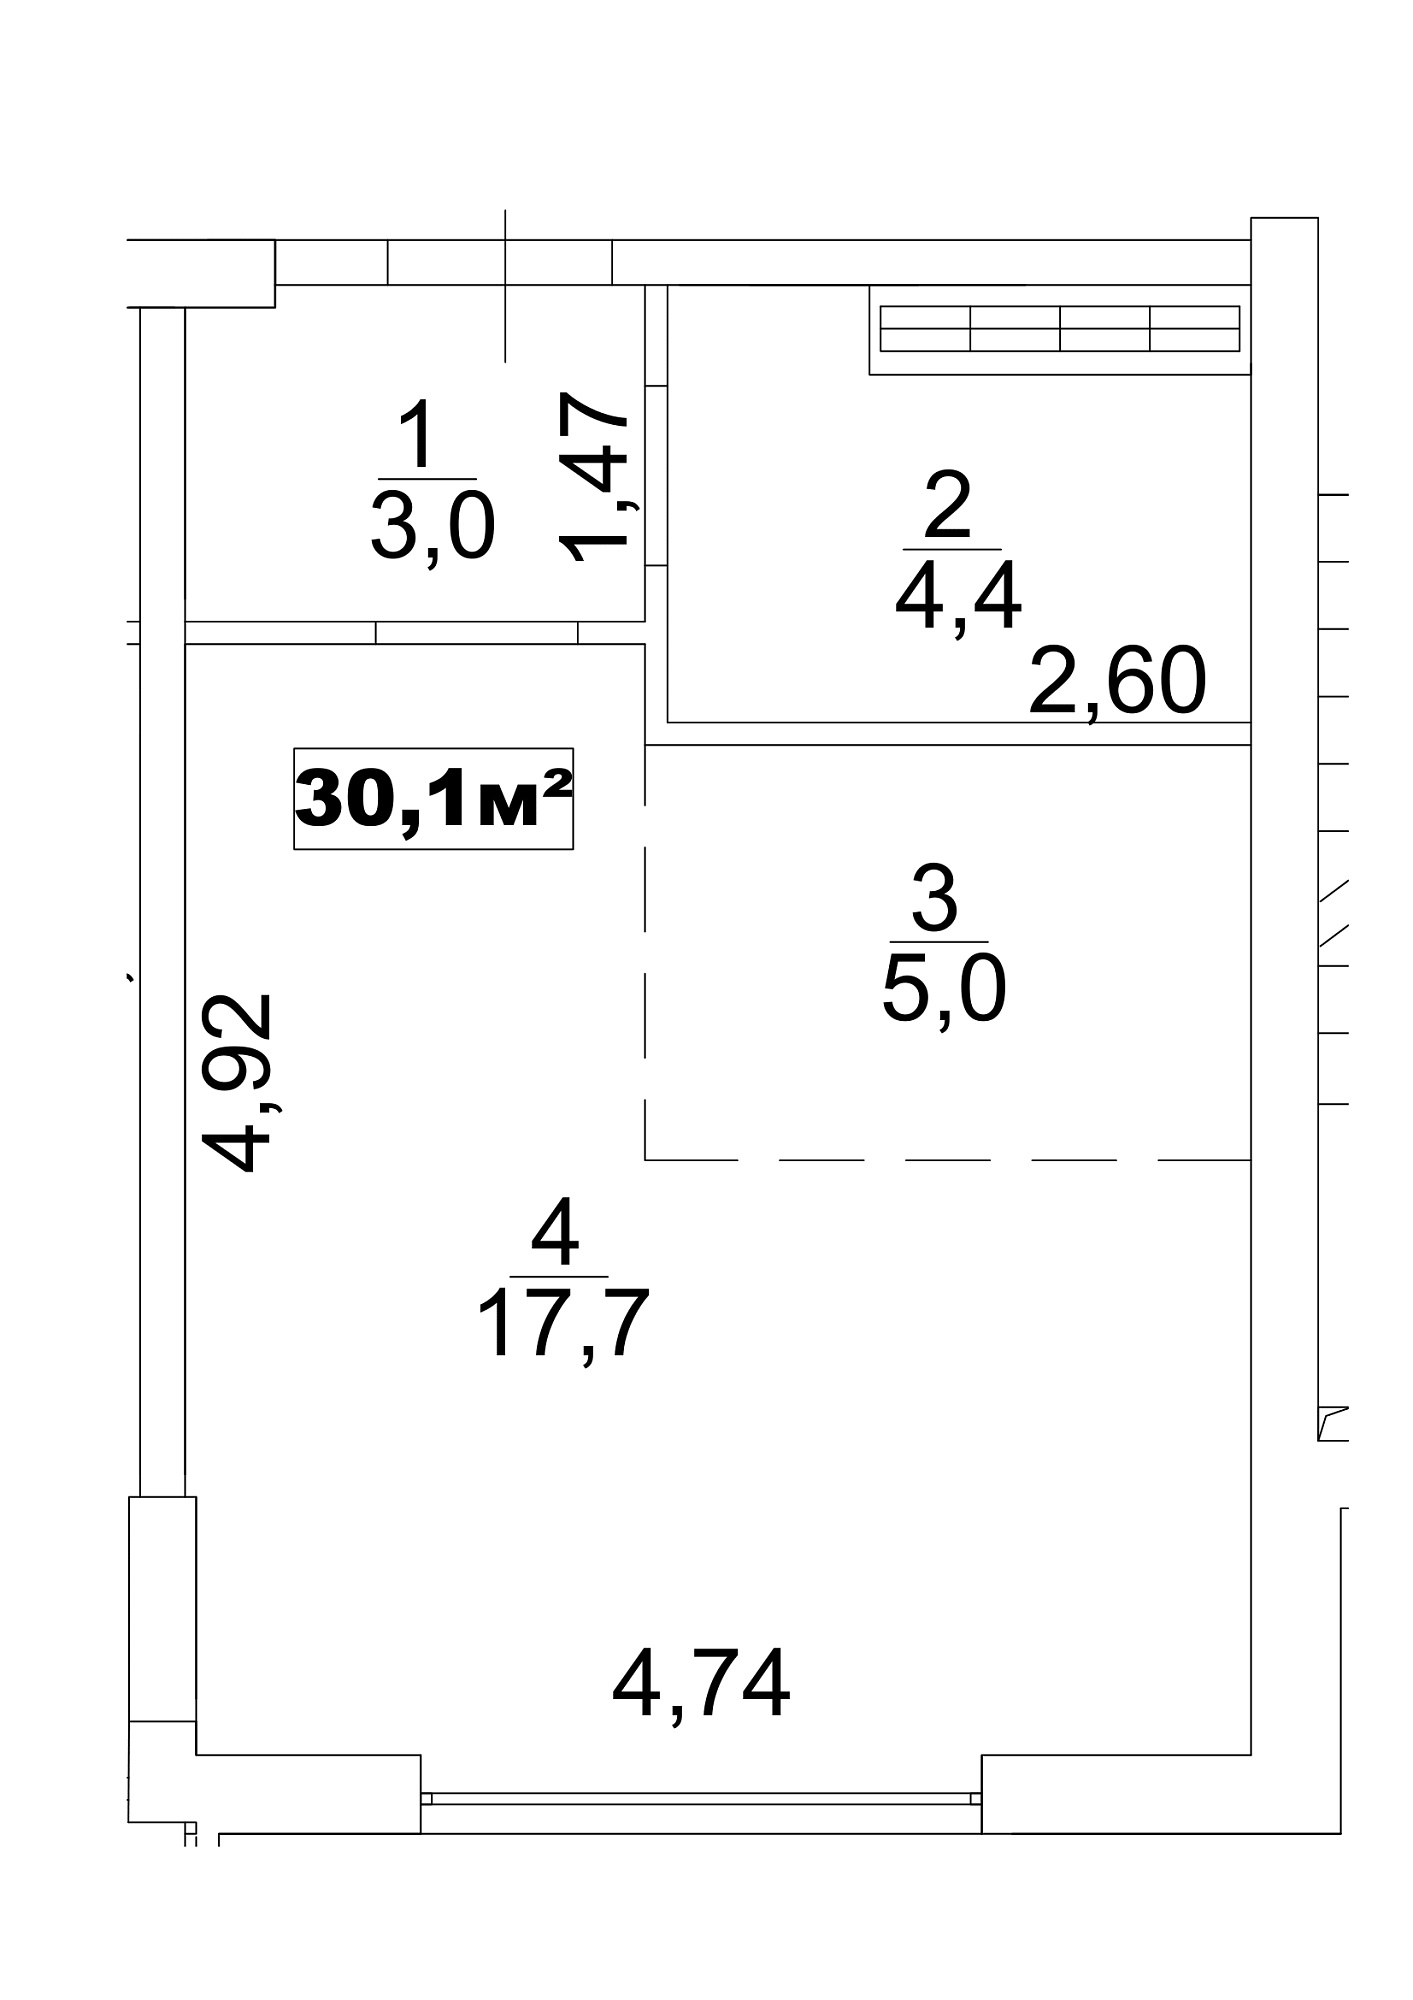 Планировка Smart-квартира площей 30.1м2, AB-13-04/0025а.